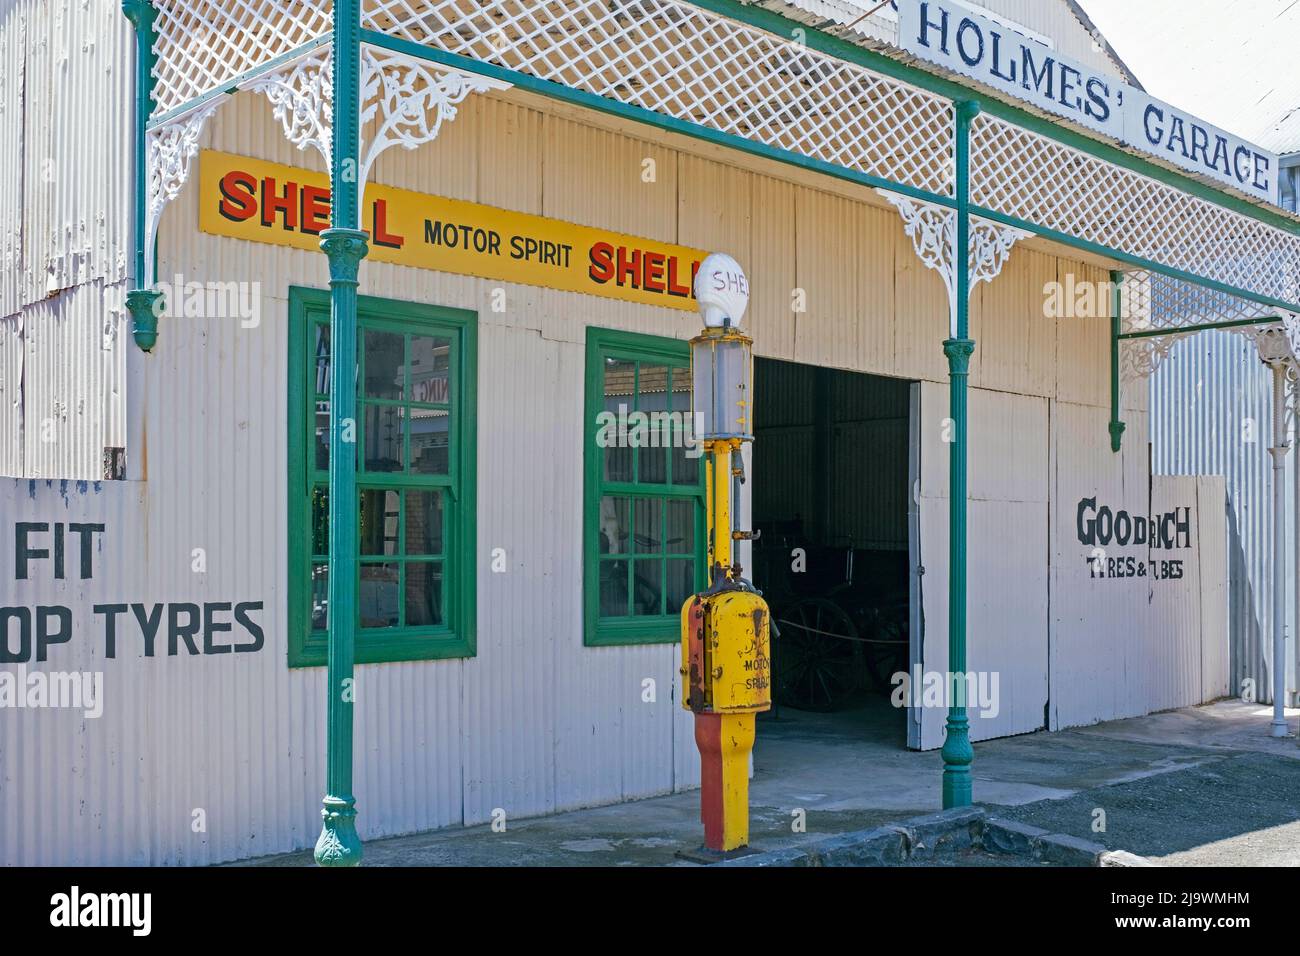 Vecchio garage e distributore di benzina Shell presso il Big Hole and Open Mine Museum a Kimberley, Frances Baard, provincia del Capo Settentrionale, Sudafrica Foto Stock